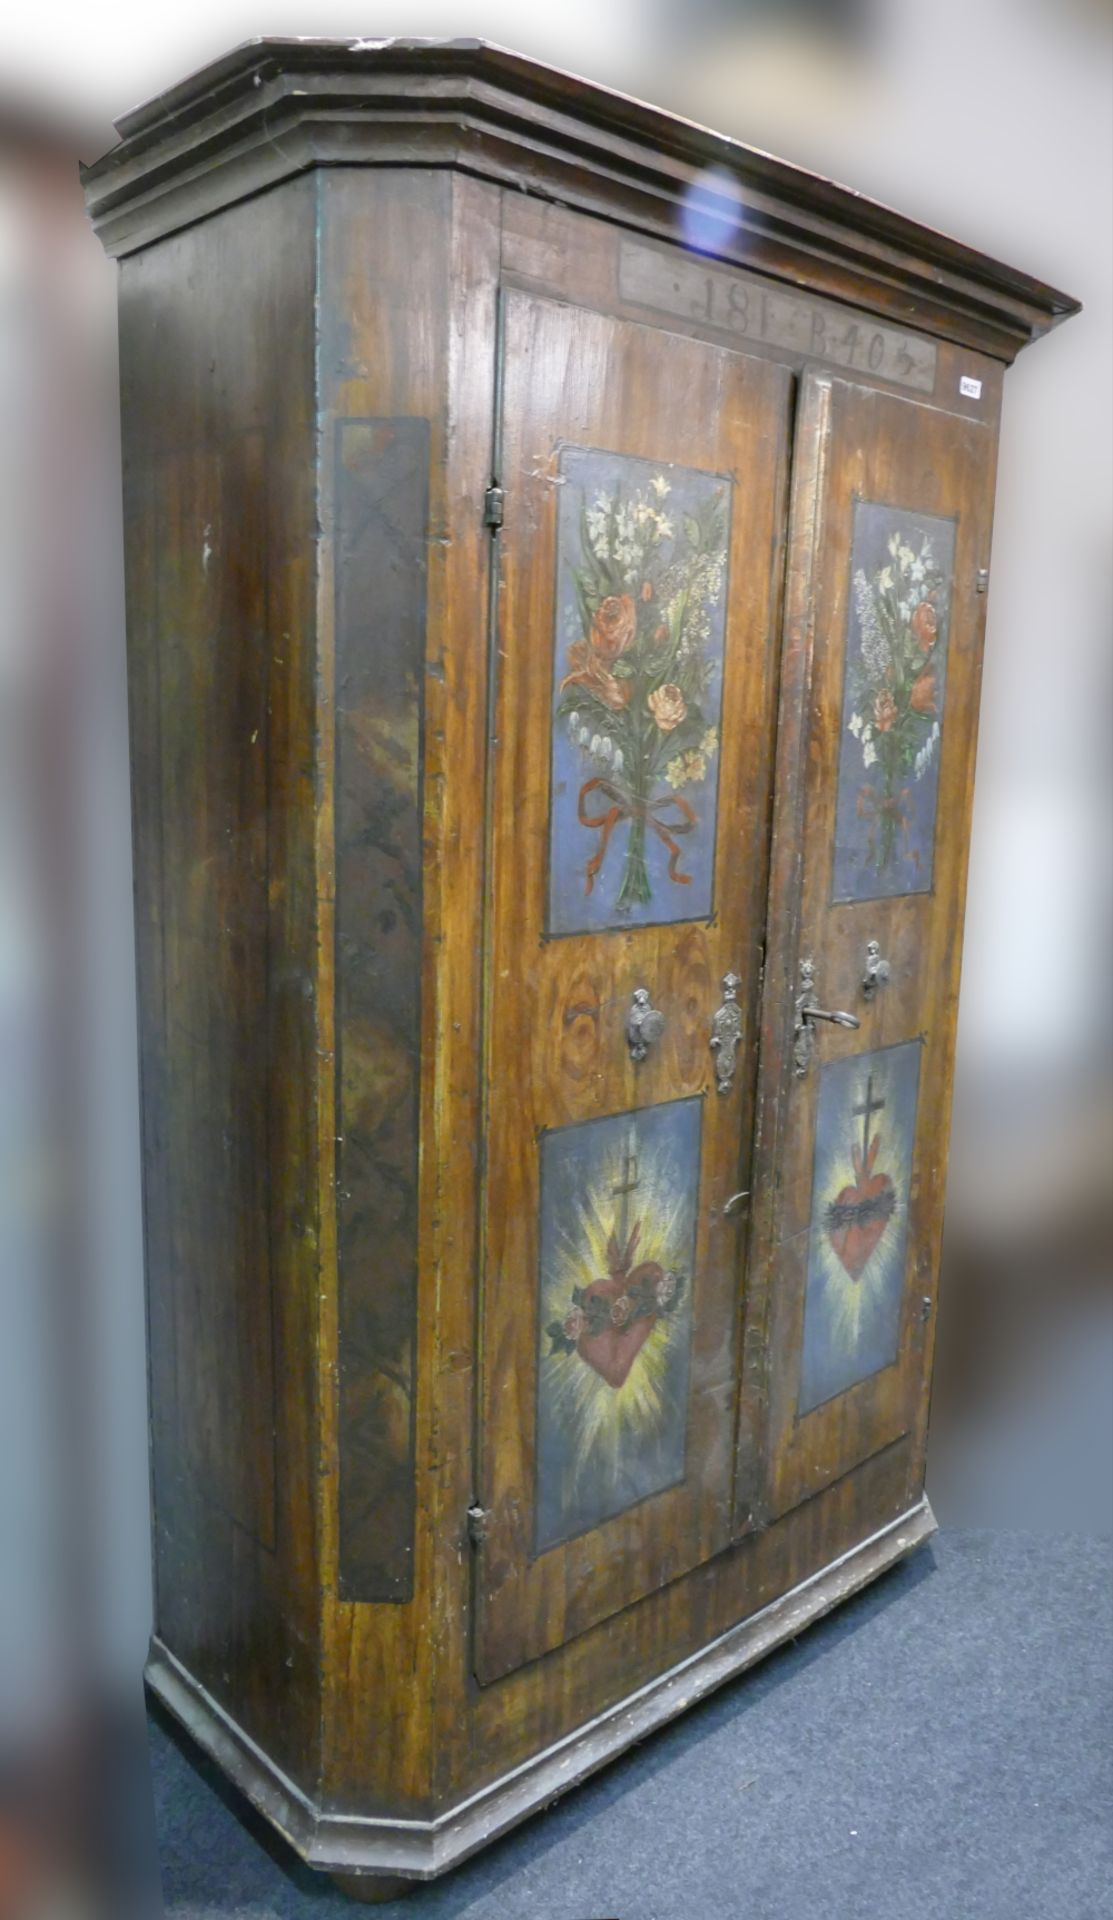 2 Bauernmöbel wohl 19. Jh.: 1 Kleiderschrank dat. 1840 auf Türen Blumen- bzw. Herz Jesu/Mariä-Malere